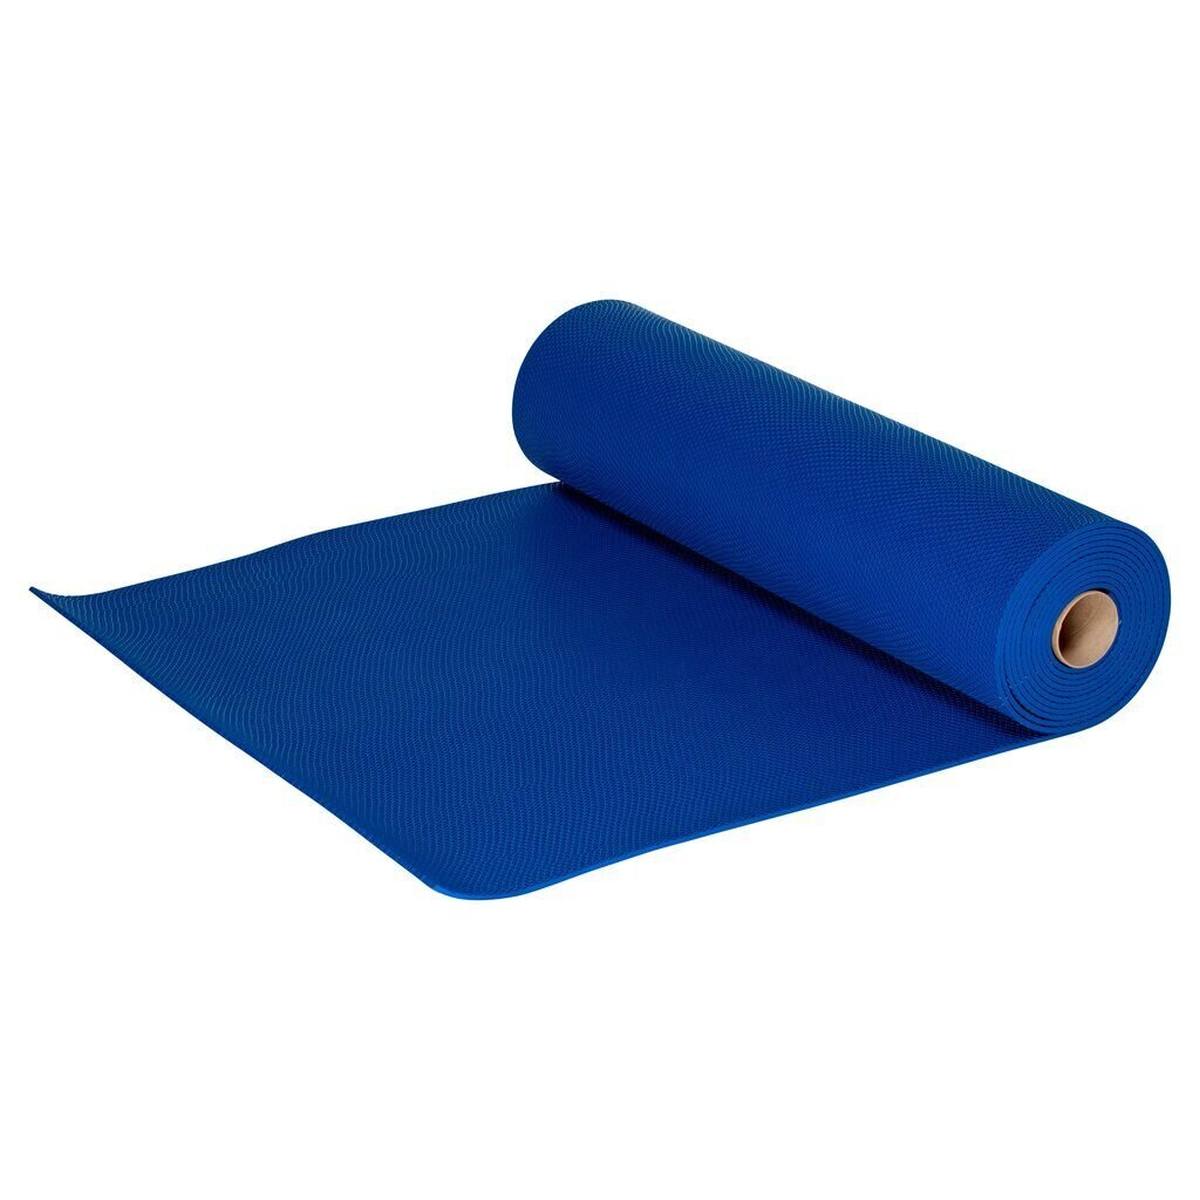 3M Safety-Walk wet zone flooring 3200, blue, 914 mm x 6 m